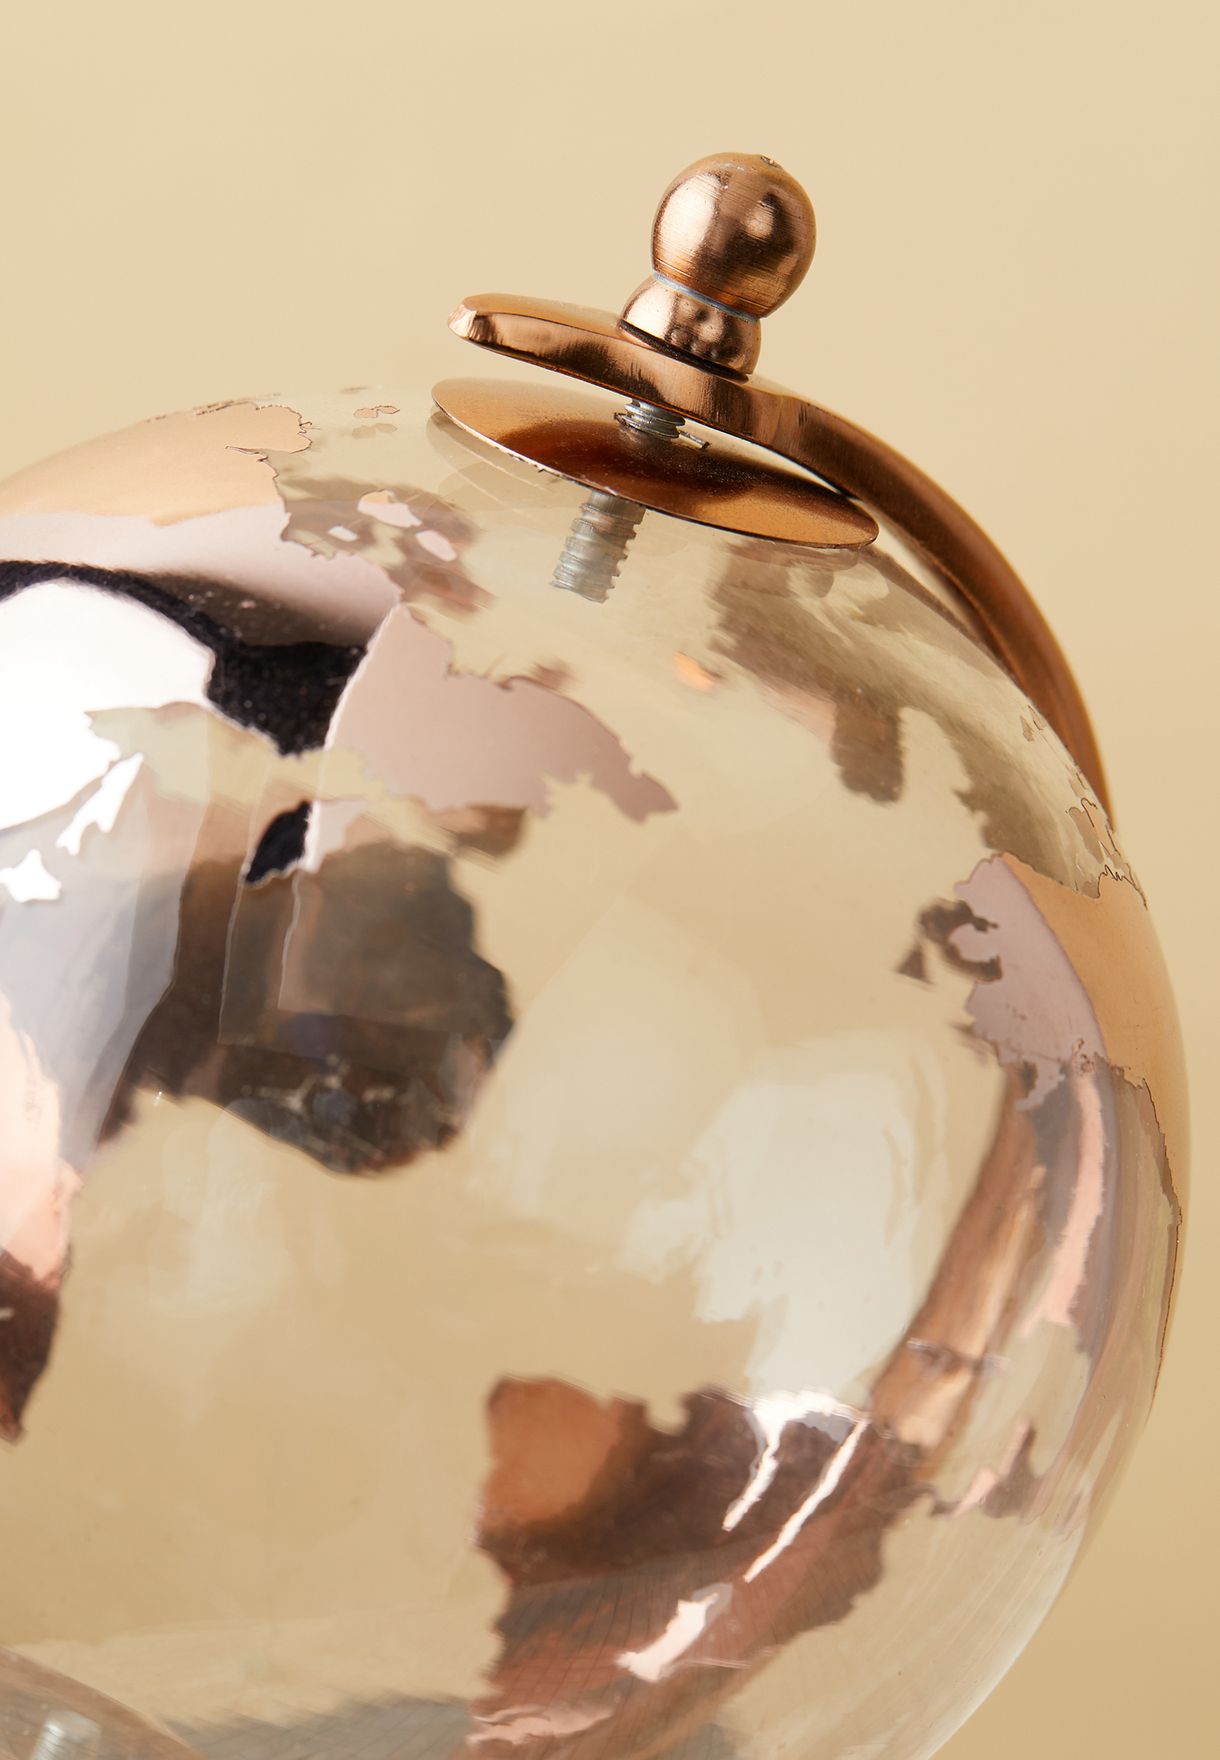 Copper Decorative Globe 9.5"